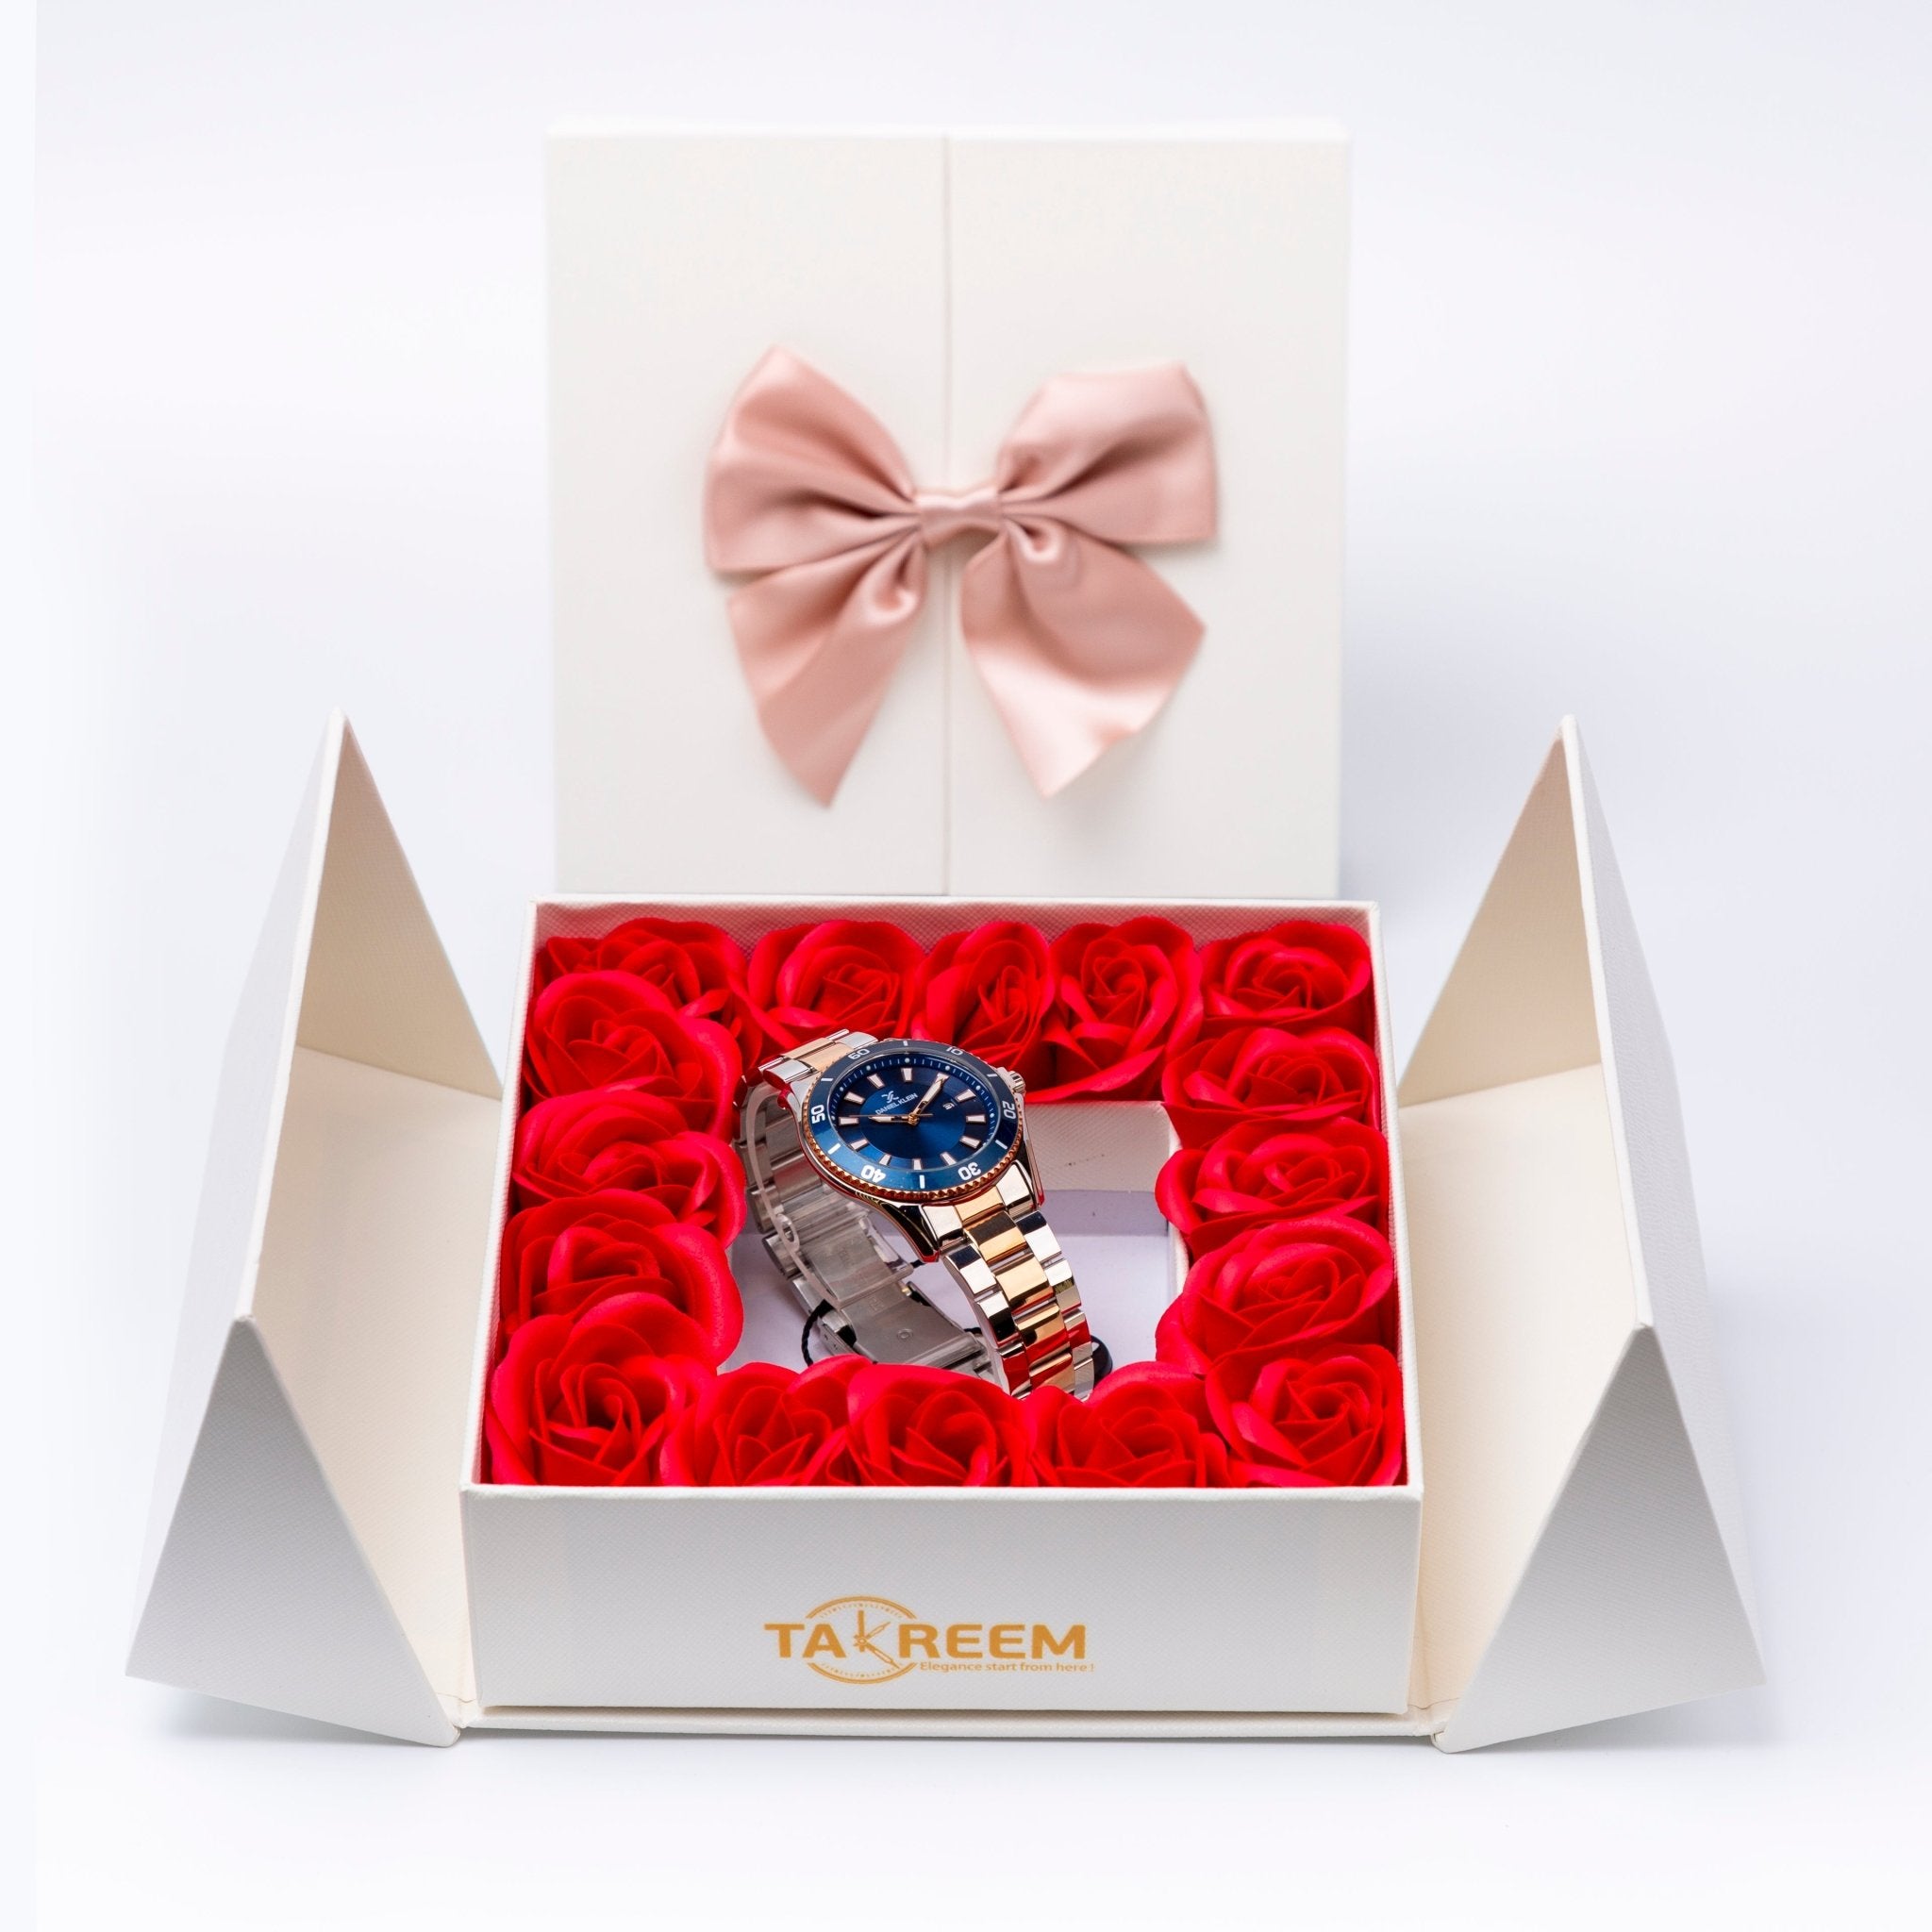 Flower Box - Gift For Women 3 - #shoFlower Box - Gift For Women 3p_name#Flower Box - Gift For Women 3Gift Boxes & TinsTakreemTakreem.joWomenWatchFlower Box - Gift For Women 3 - Takreem.jo